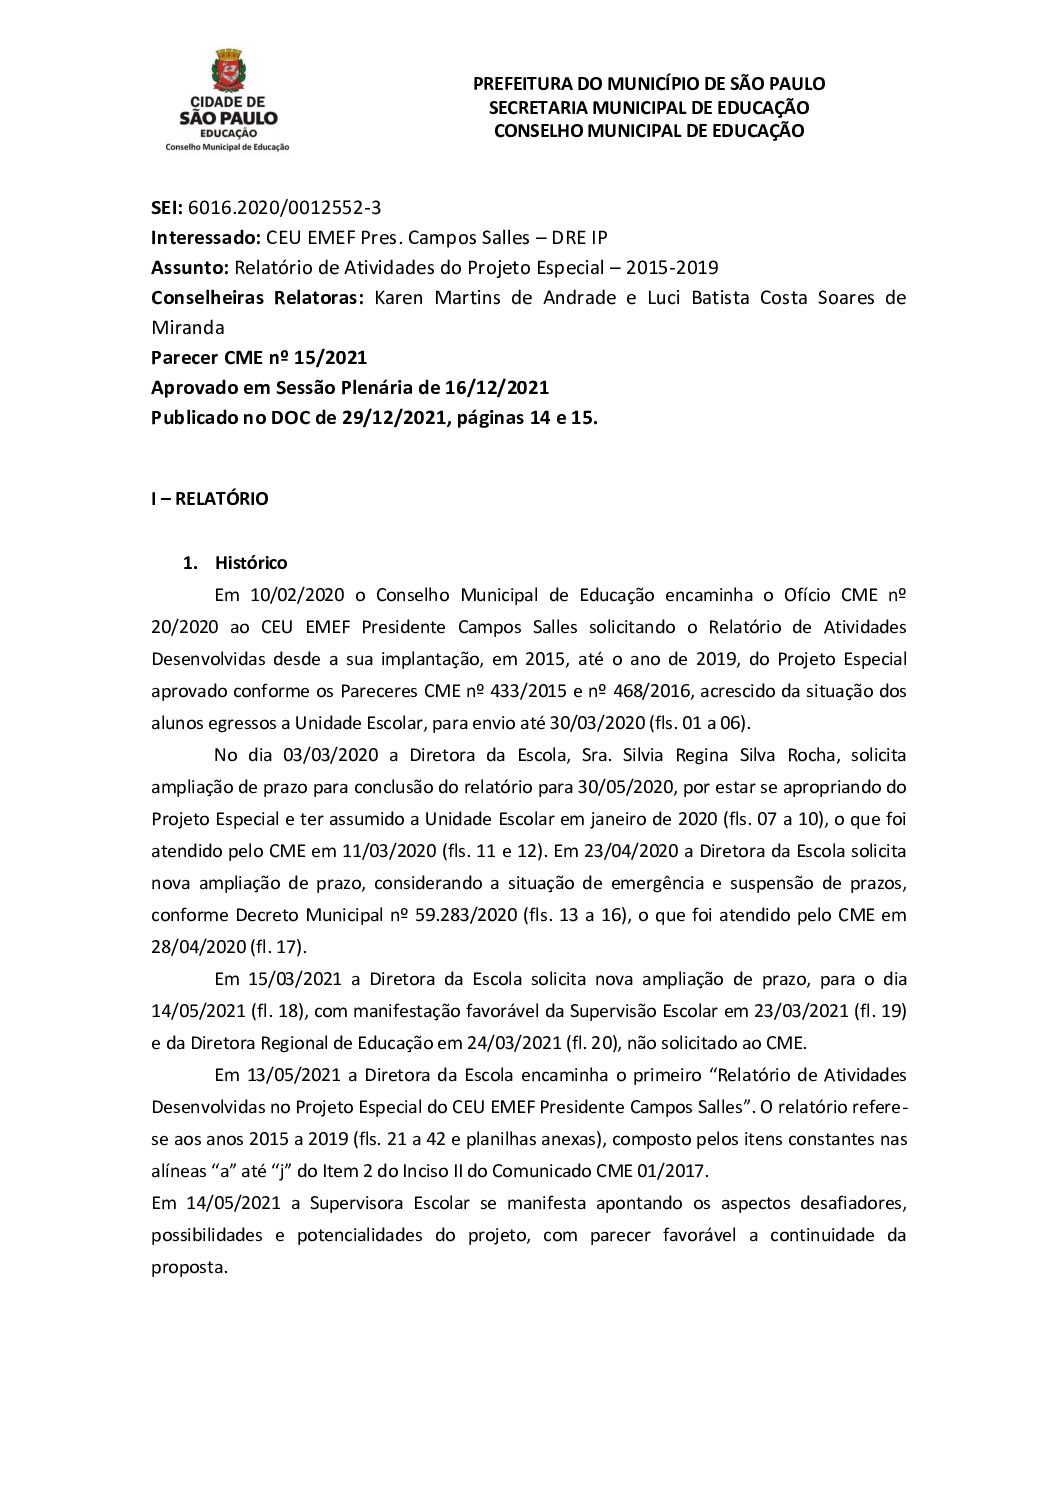 Parecer CME nº 15/2021 - CEU EMEF Pres. Campos Salles (DRE Ipiranga) -  Relatório de Atividades do Projeto Especial 2015-2019  